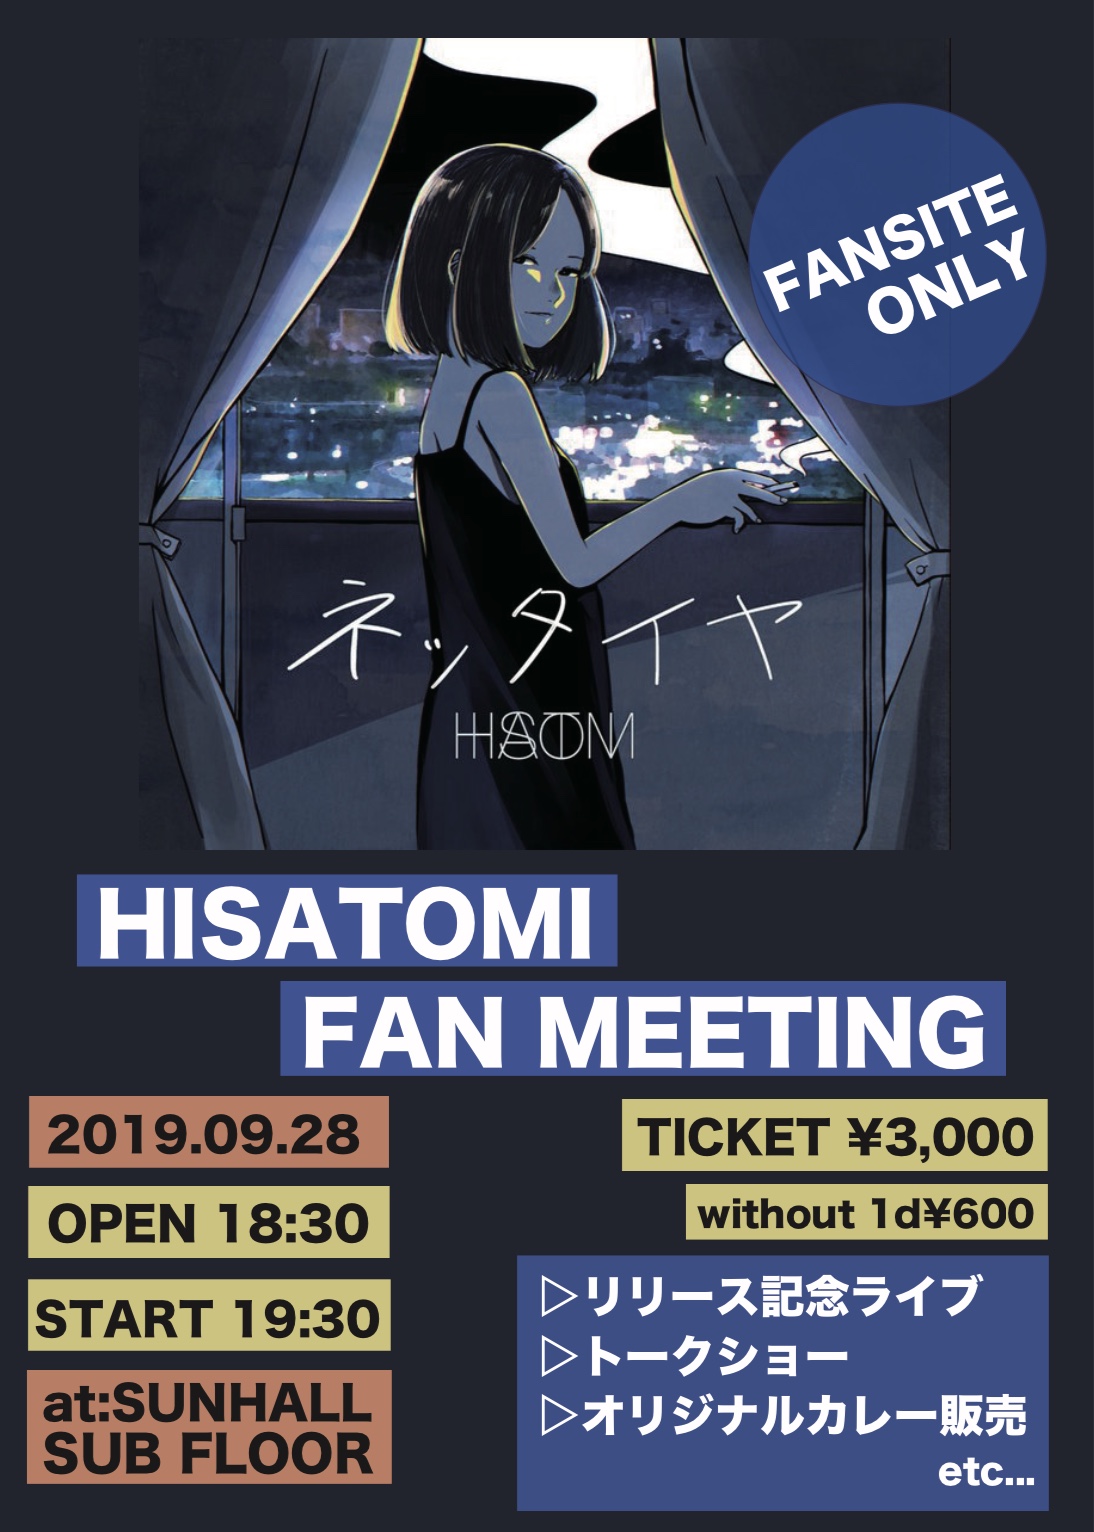 HISATOMI FAN MEETING